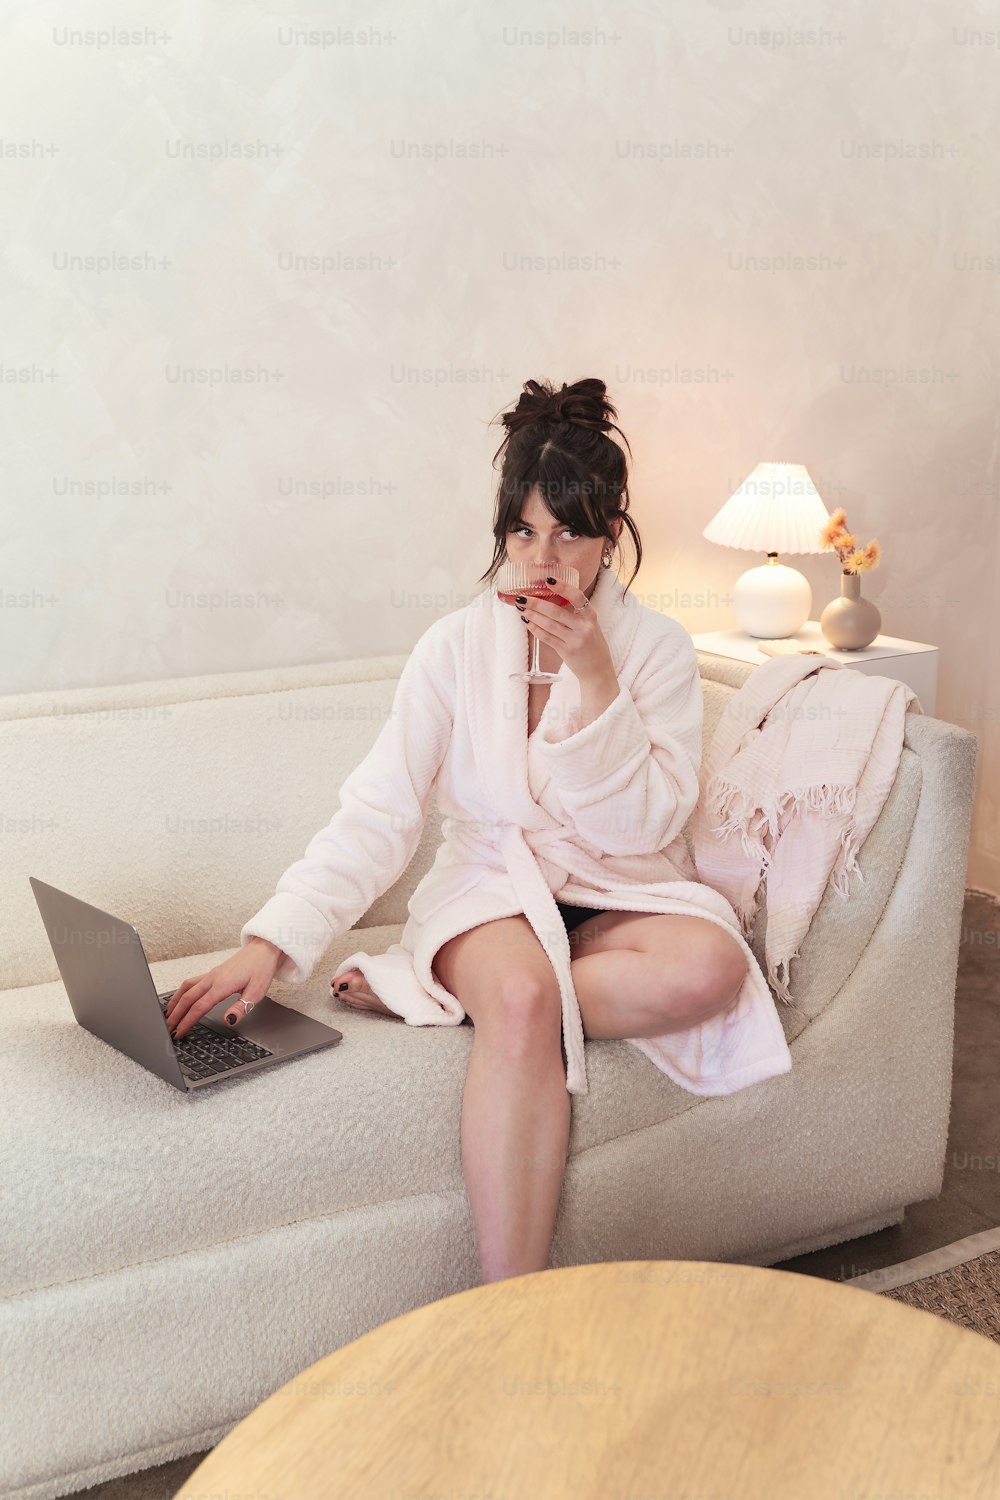 uma mulher sentada em um sofá usando um computador portátil